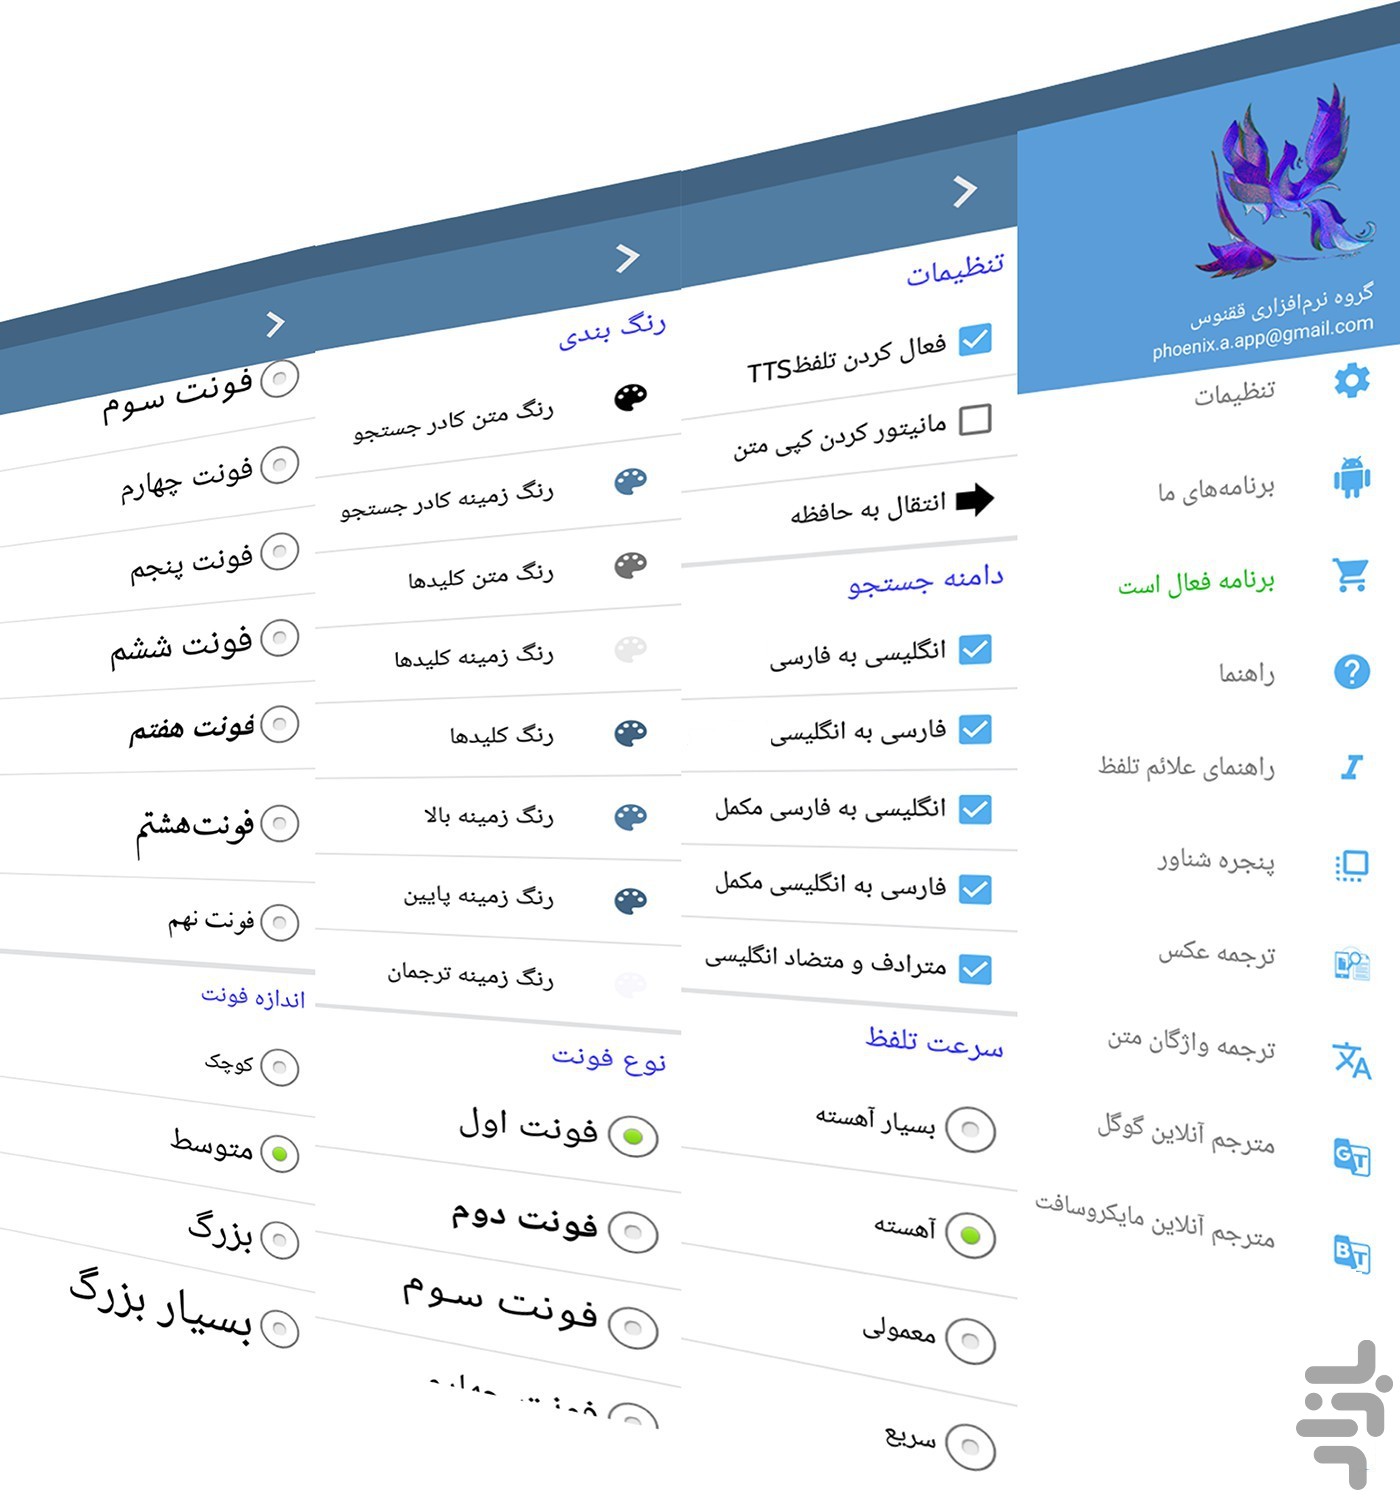 دیکشنری برای ترجمه اصطلاحات انگلیسی به فارسی
